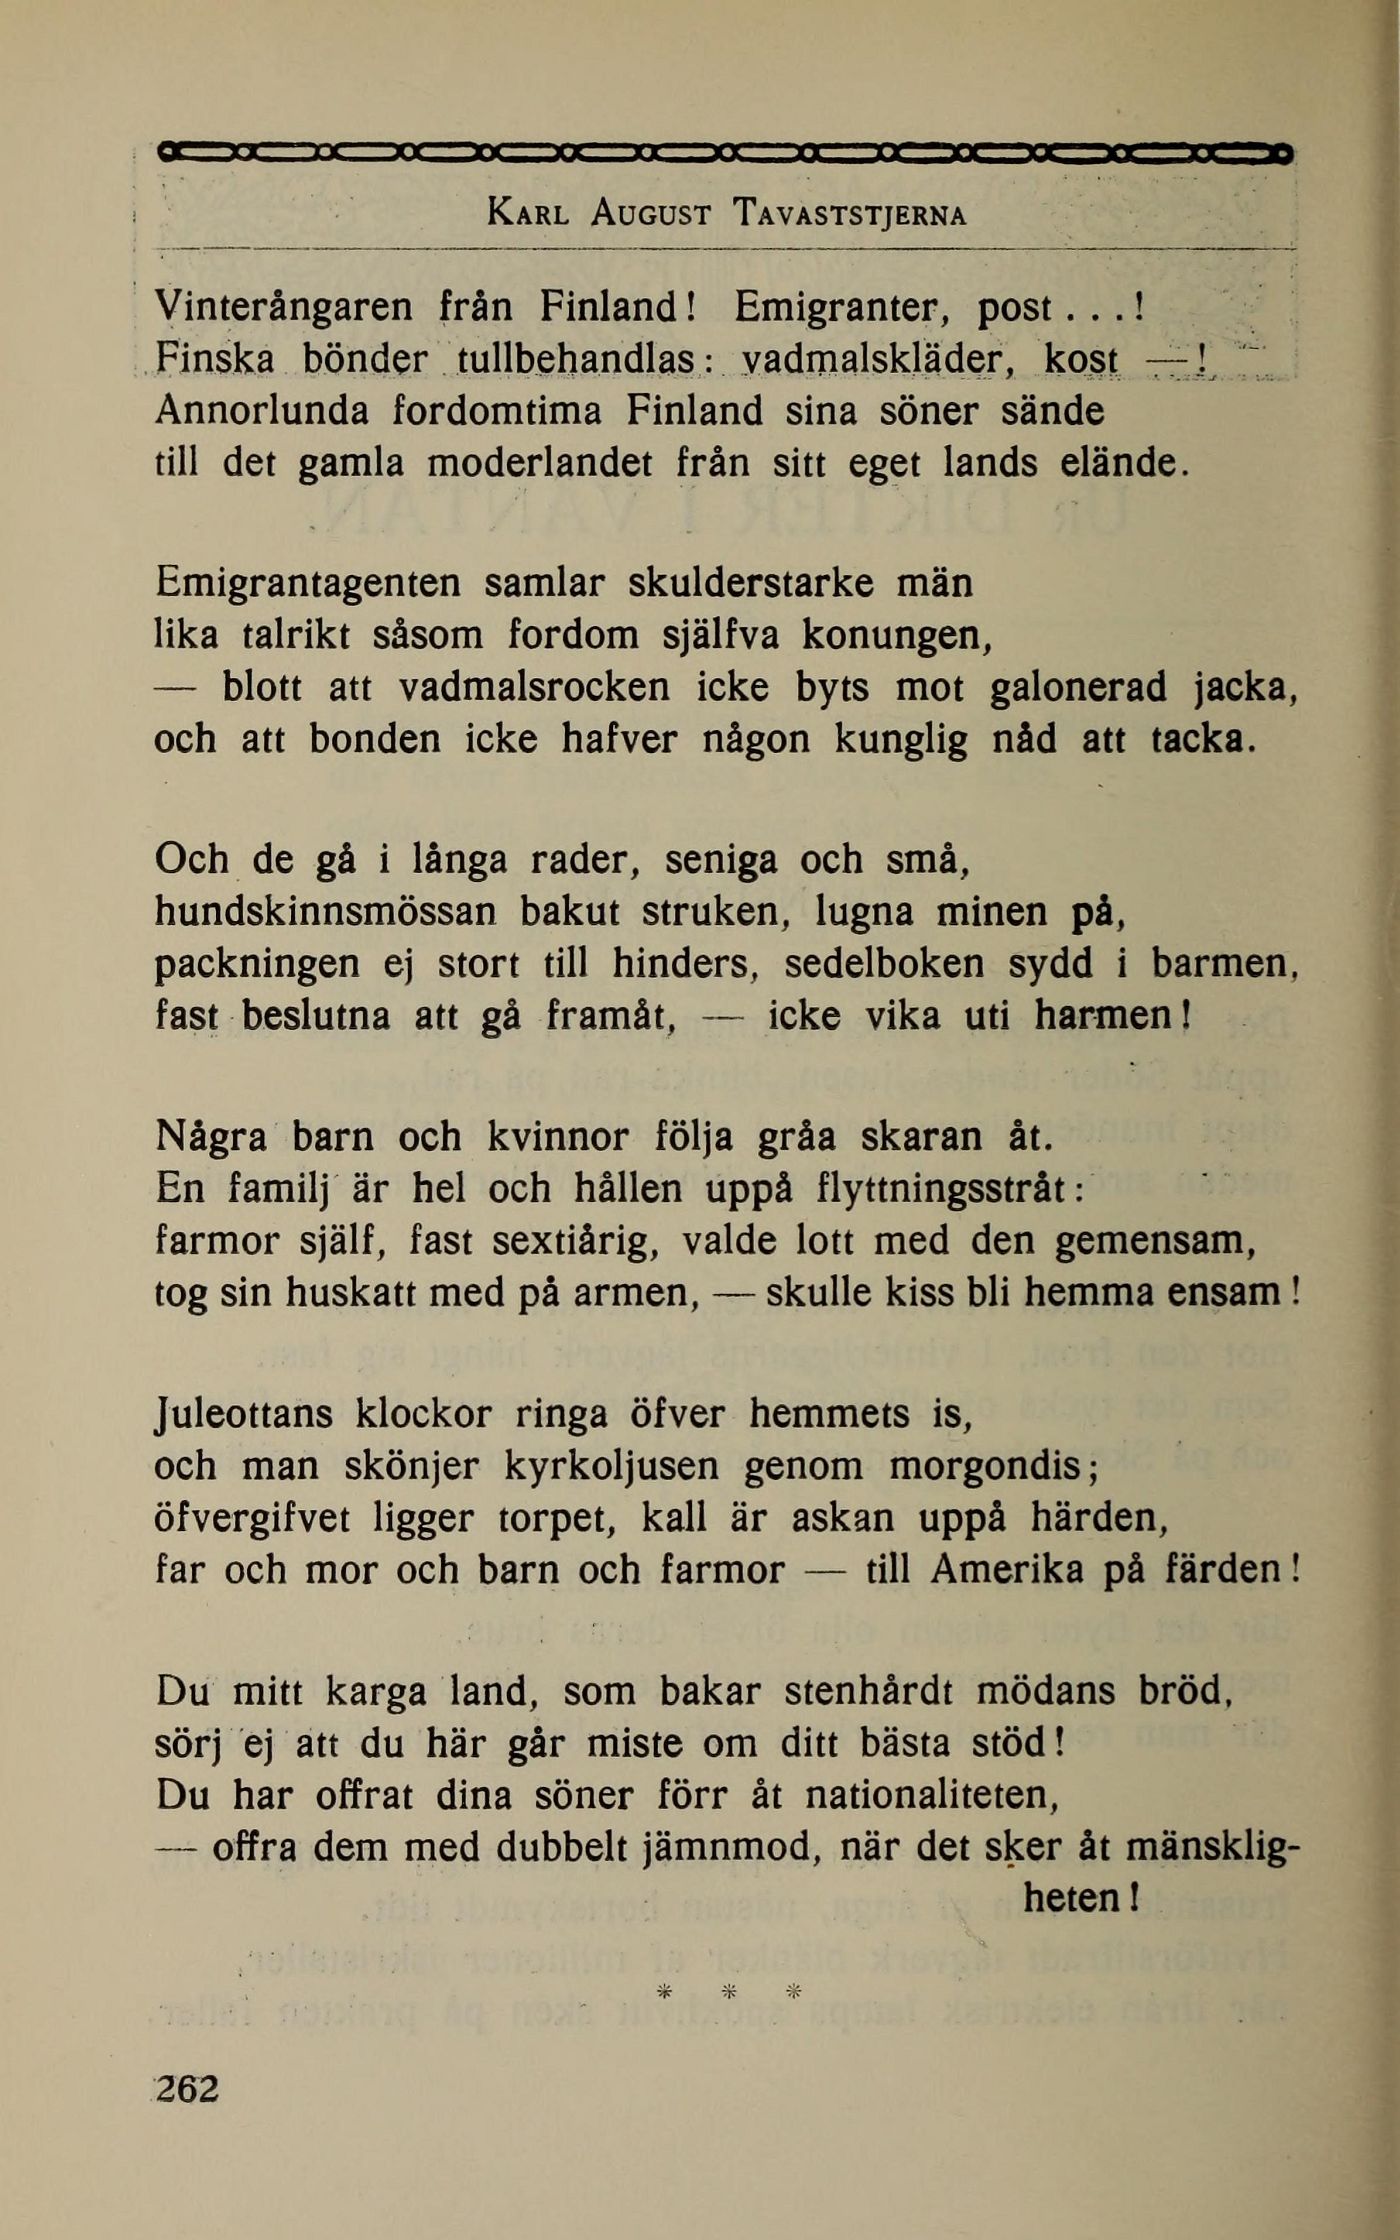 262 (Sveriges national-litteratur 1500-1900 / 25:2. Finländsk litteratur  utom Runeberg. Stenbäck, Topelius, von Qvanten, Wecksell, Tavaststjerna,  Lybeck)